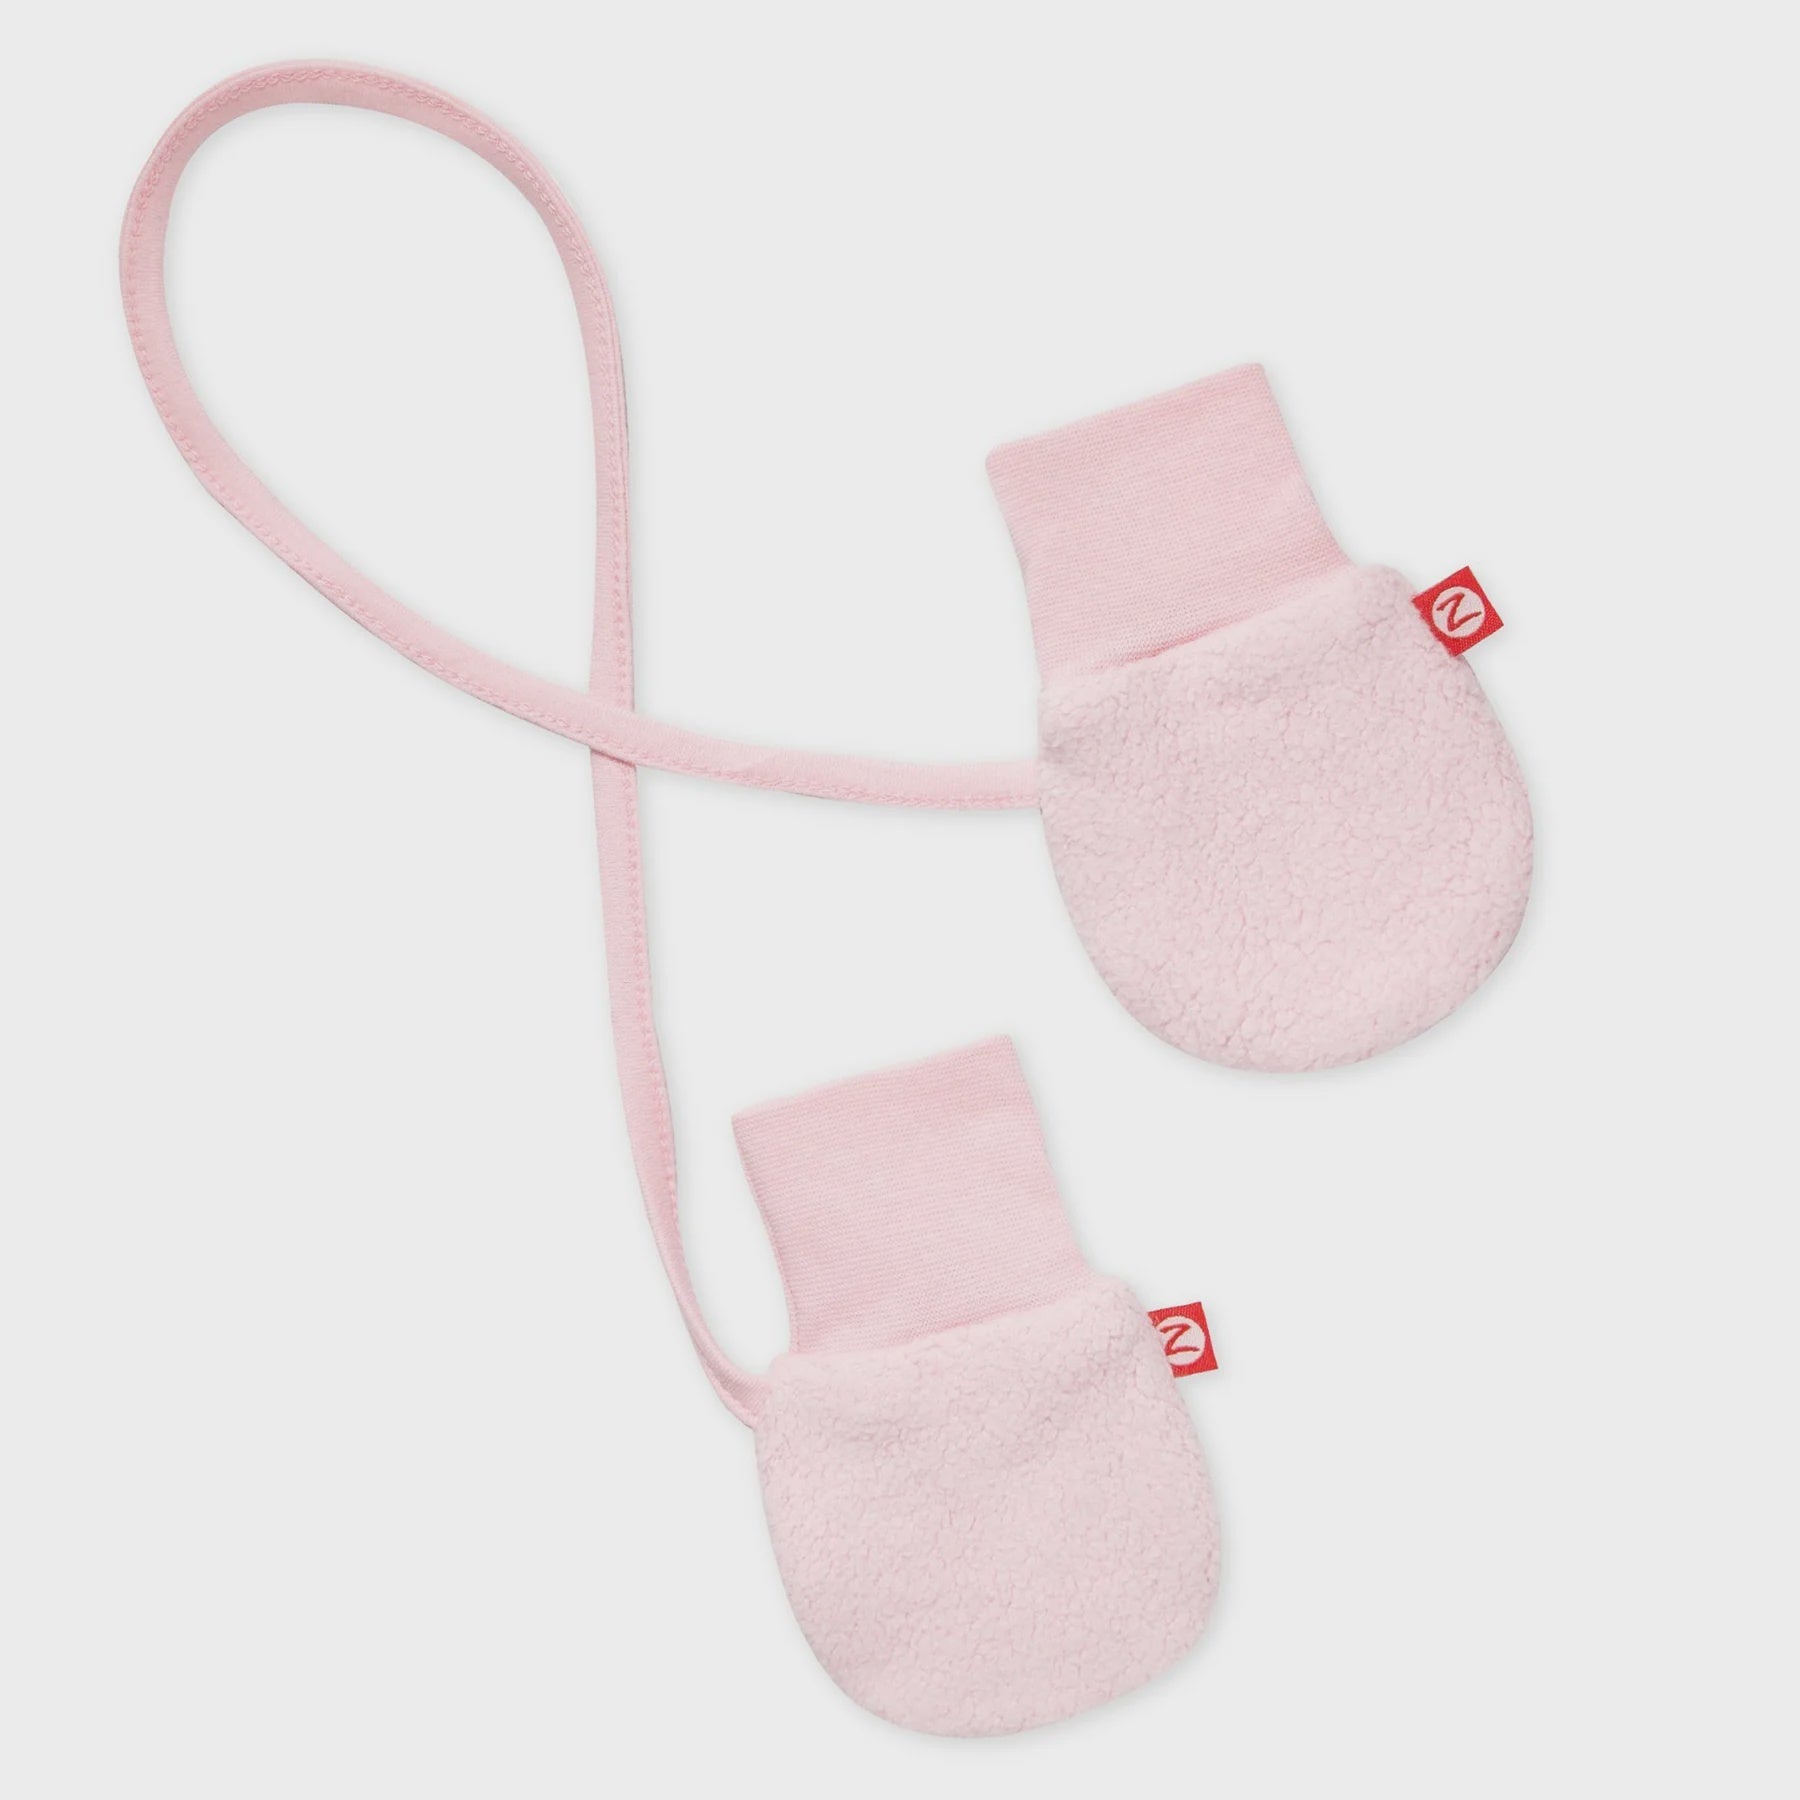 Cozie Fleece Baby Mittens - Baby Pink